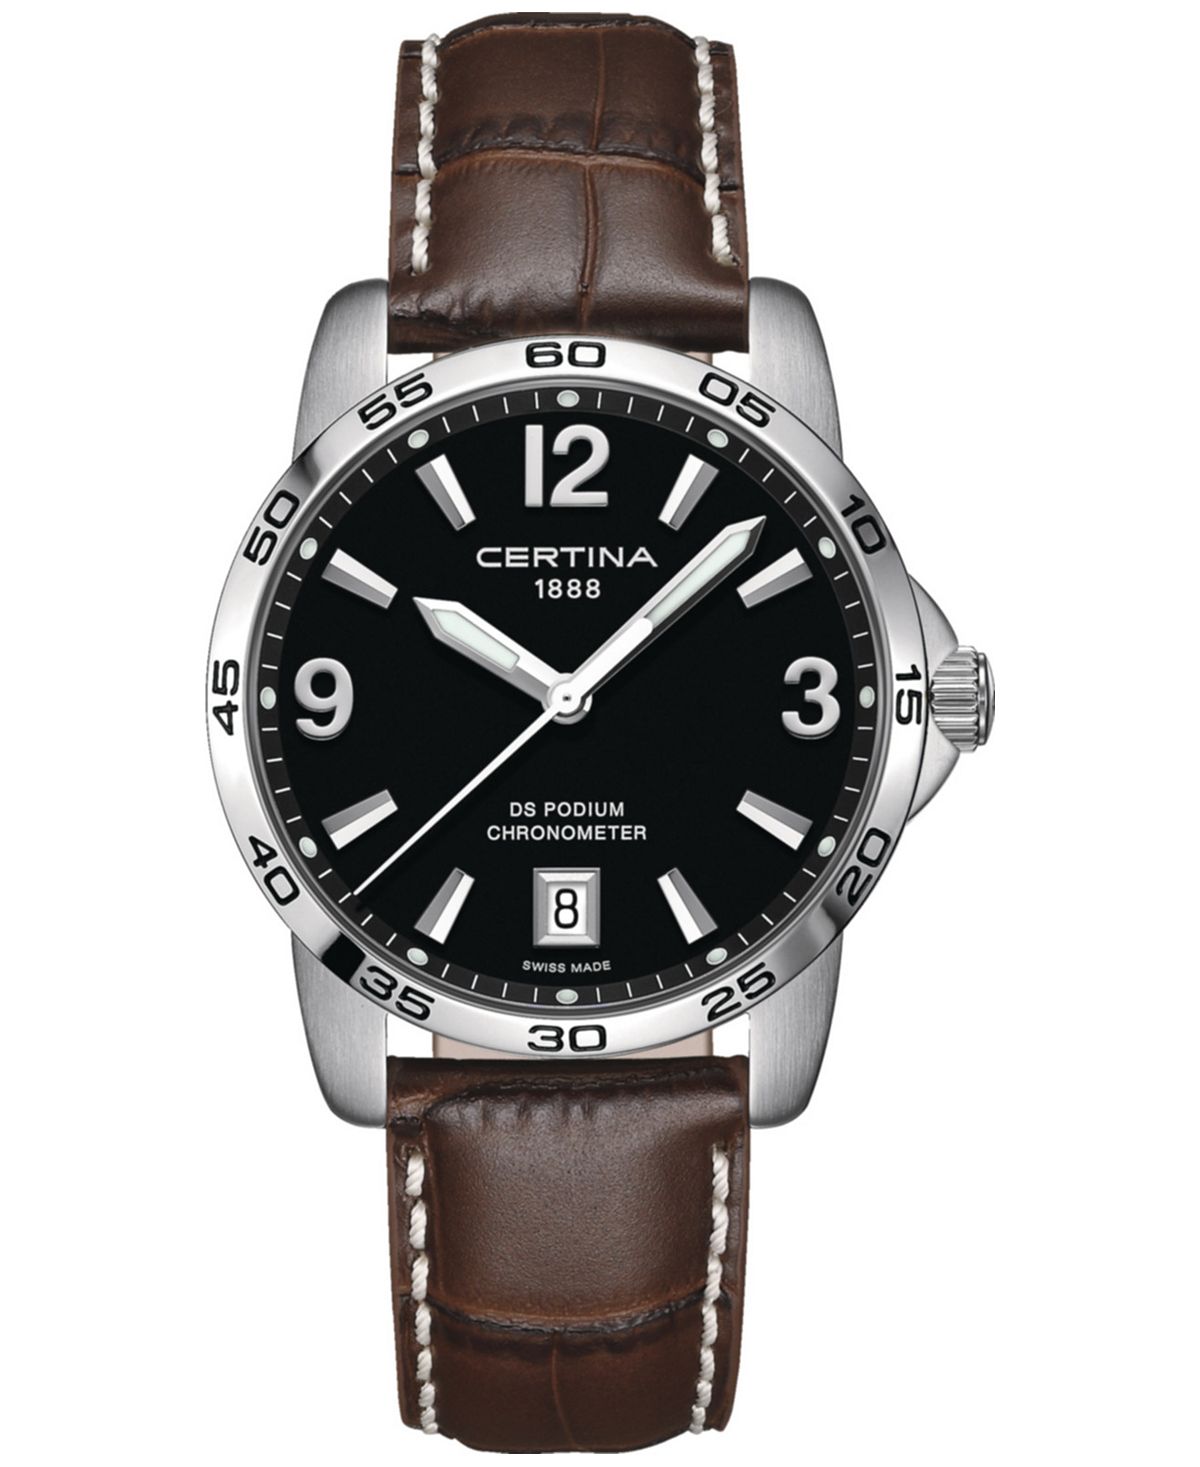 Мужские швейцарские часы DS Podium с коричневым кожаным ремешком, 40 мм Certina часы certina ds stella c031 210 11 116 00